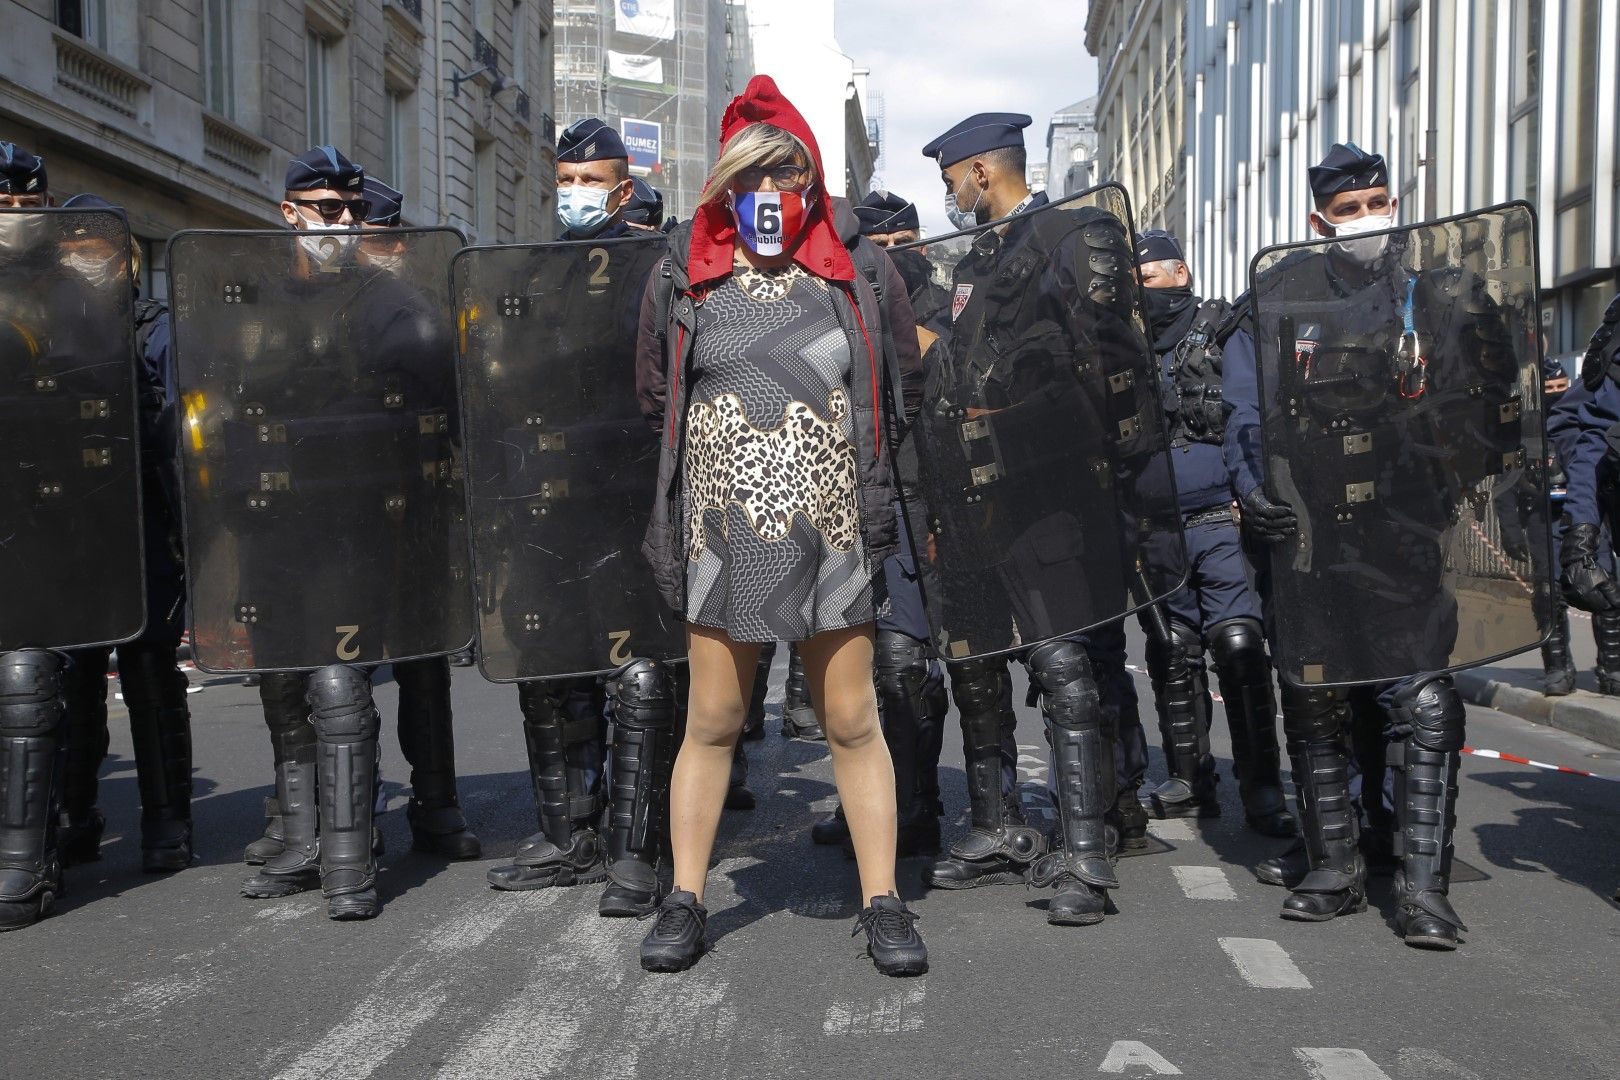  Протестиращ в Париж носи качулката на Мариан, знак от френската гражданска война през 1789 година 